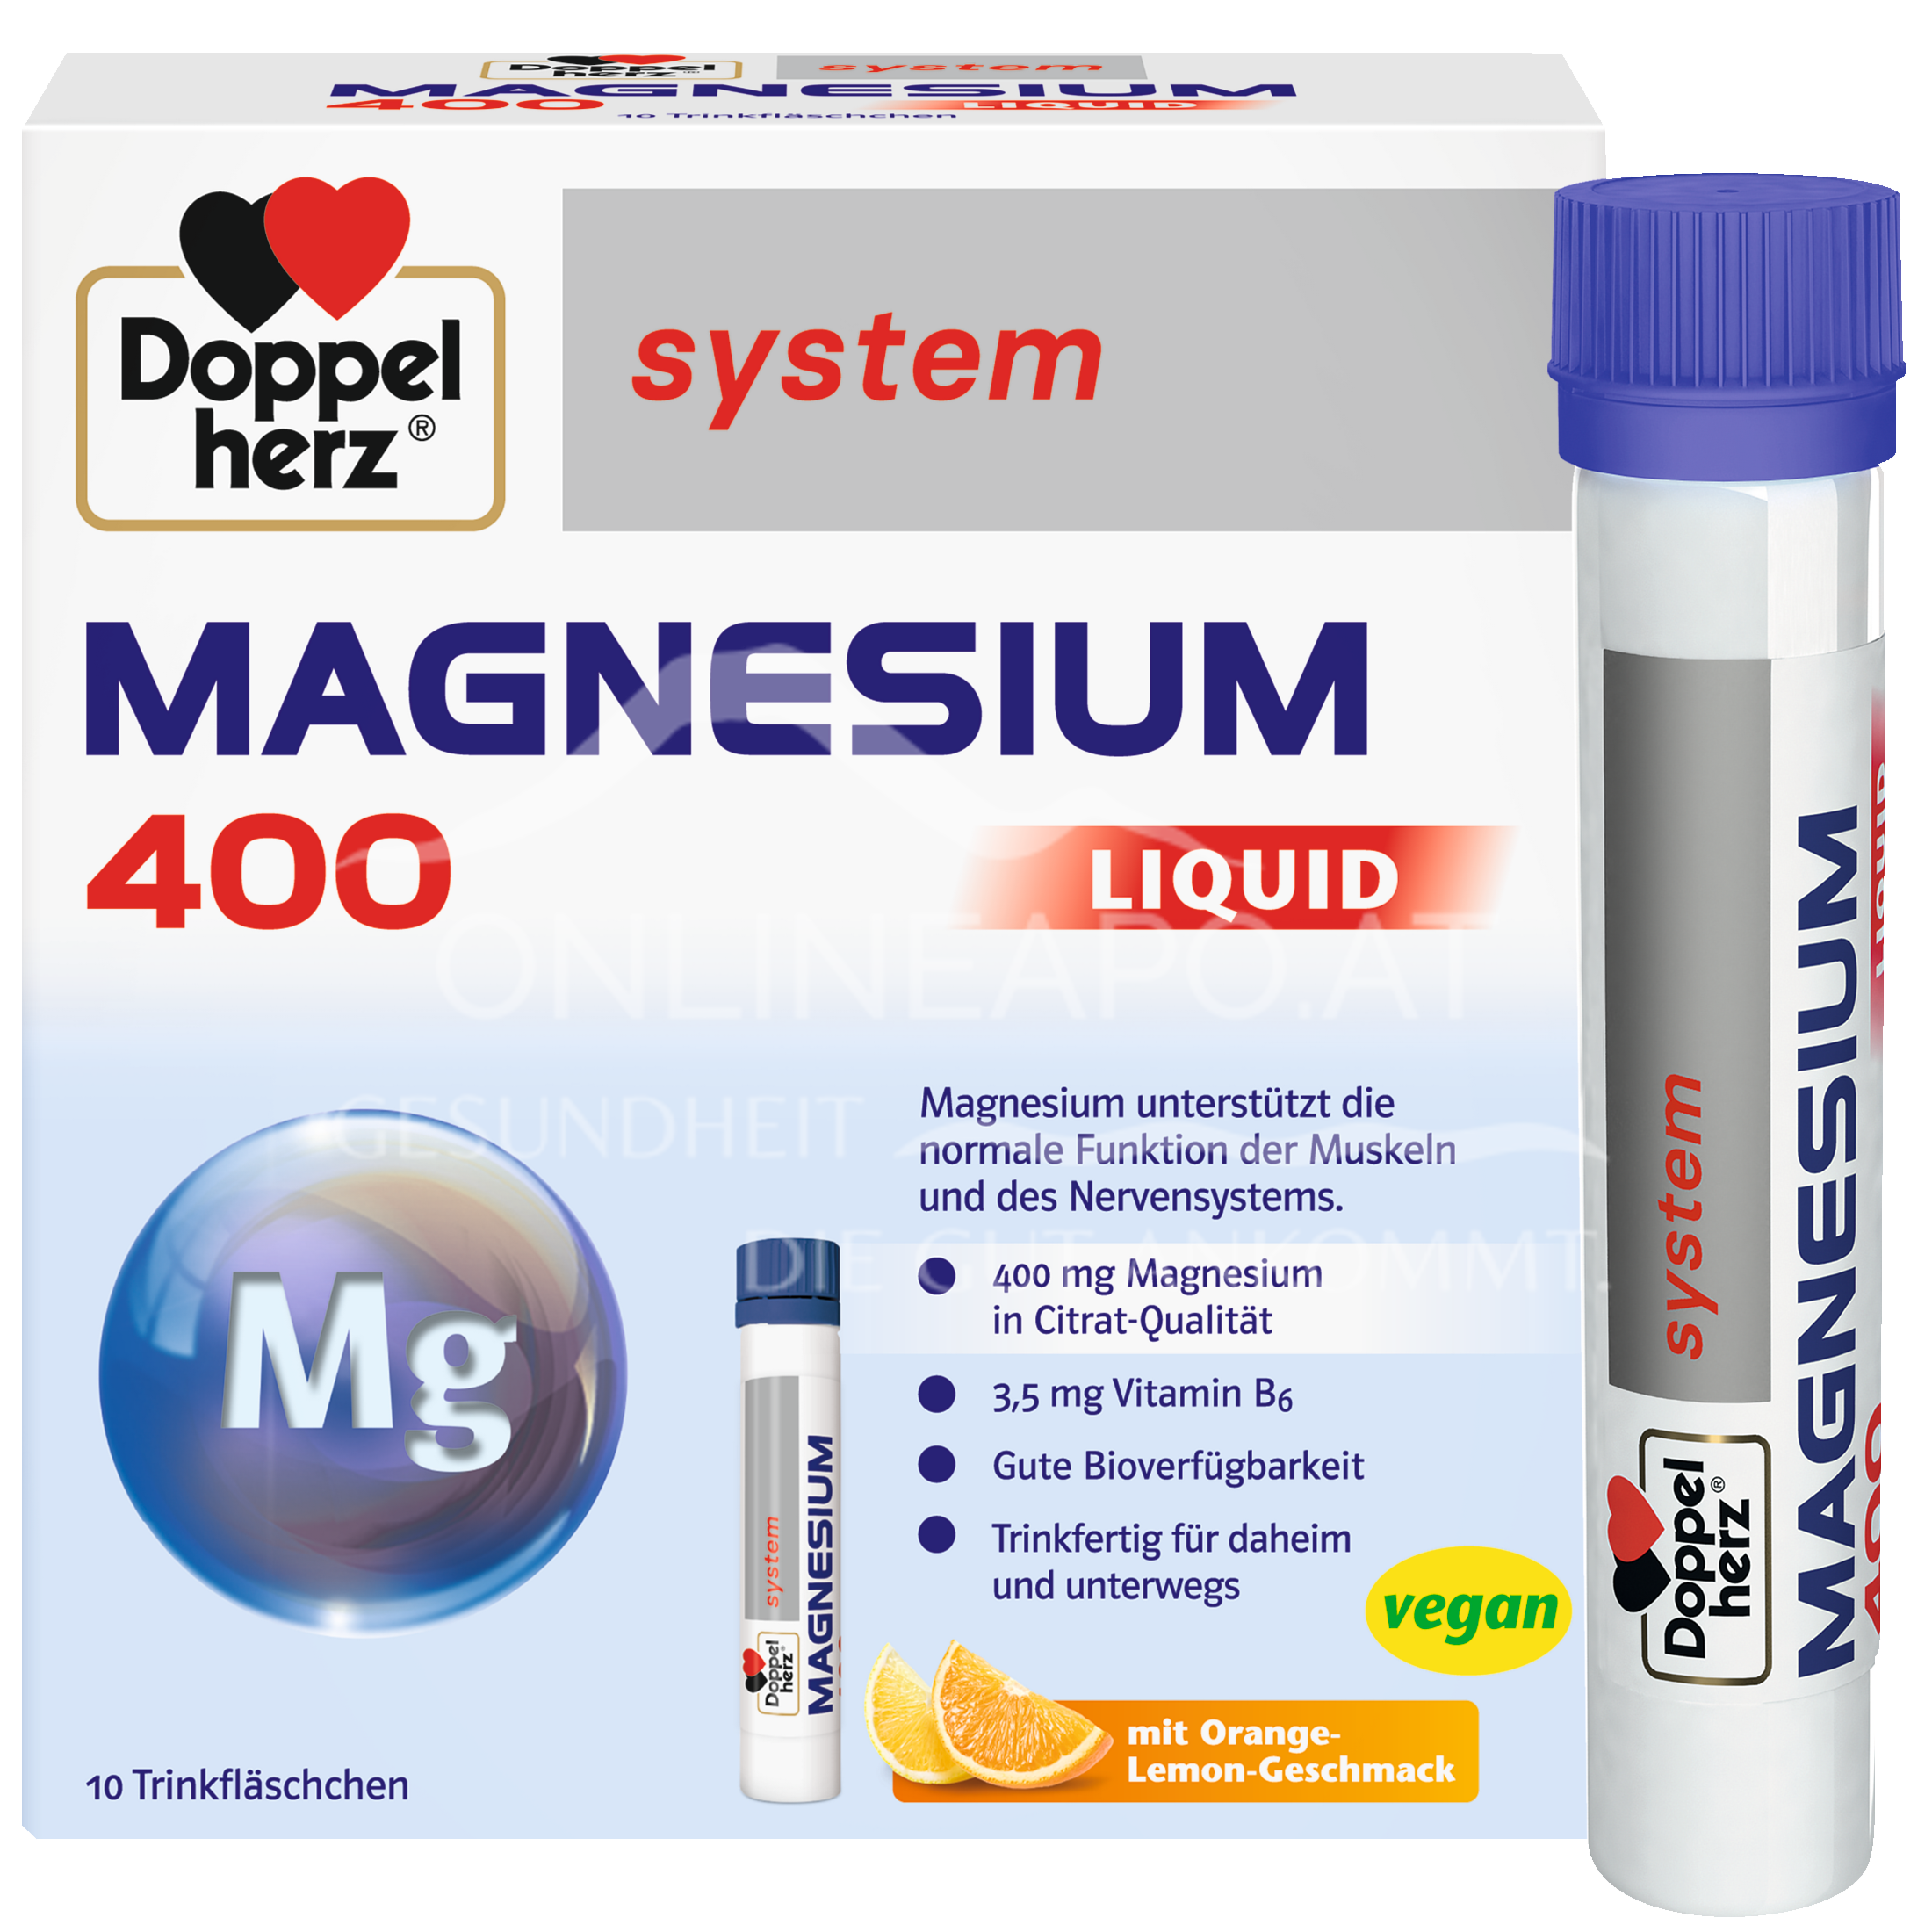 Doppelherz system Magnesium 400 Liquid Trinkfläschchen